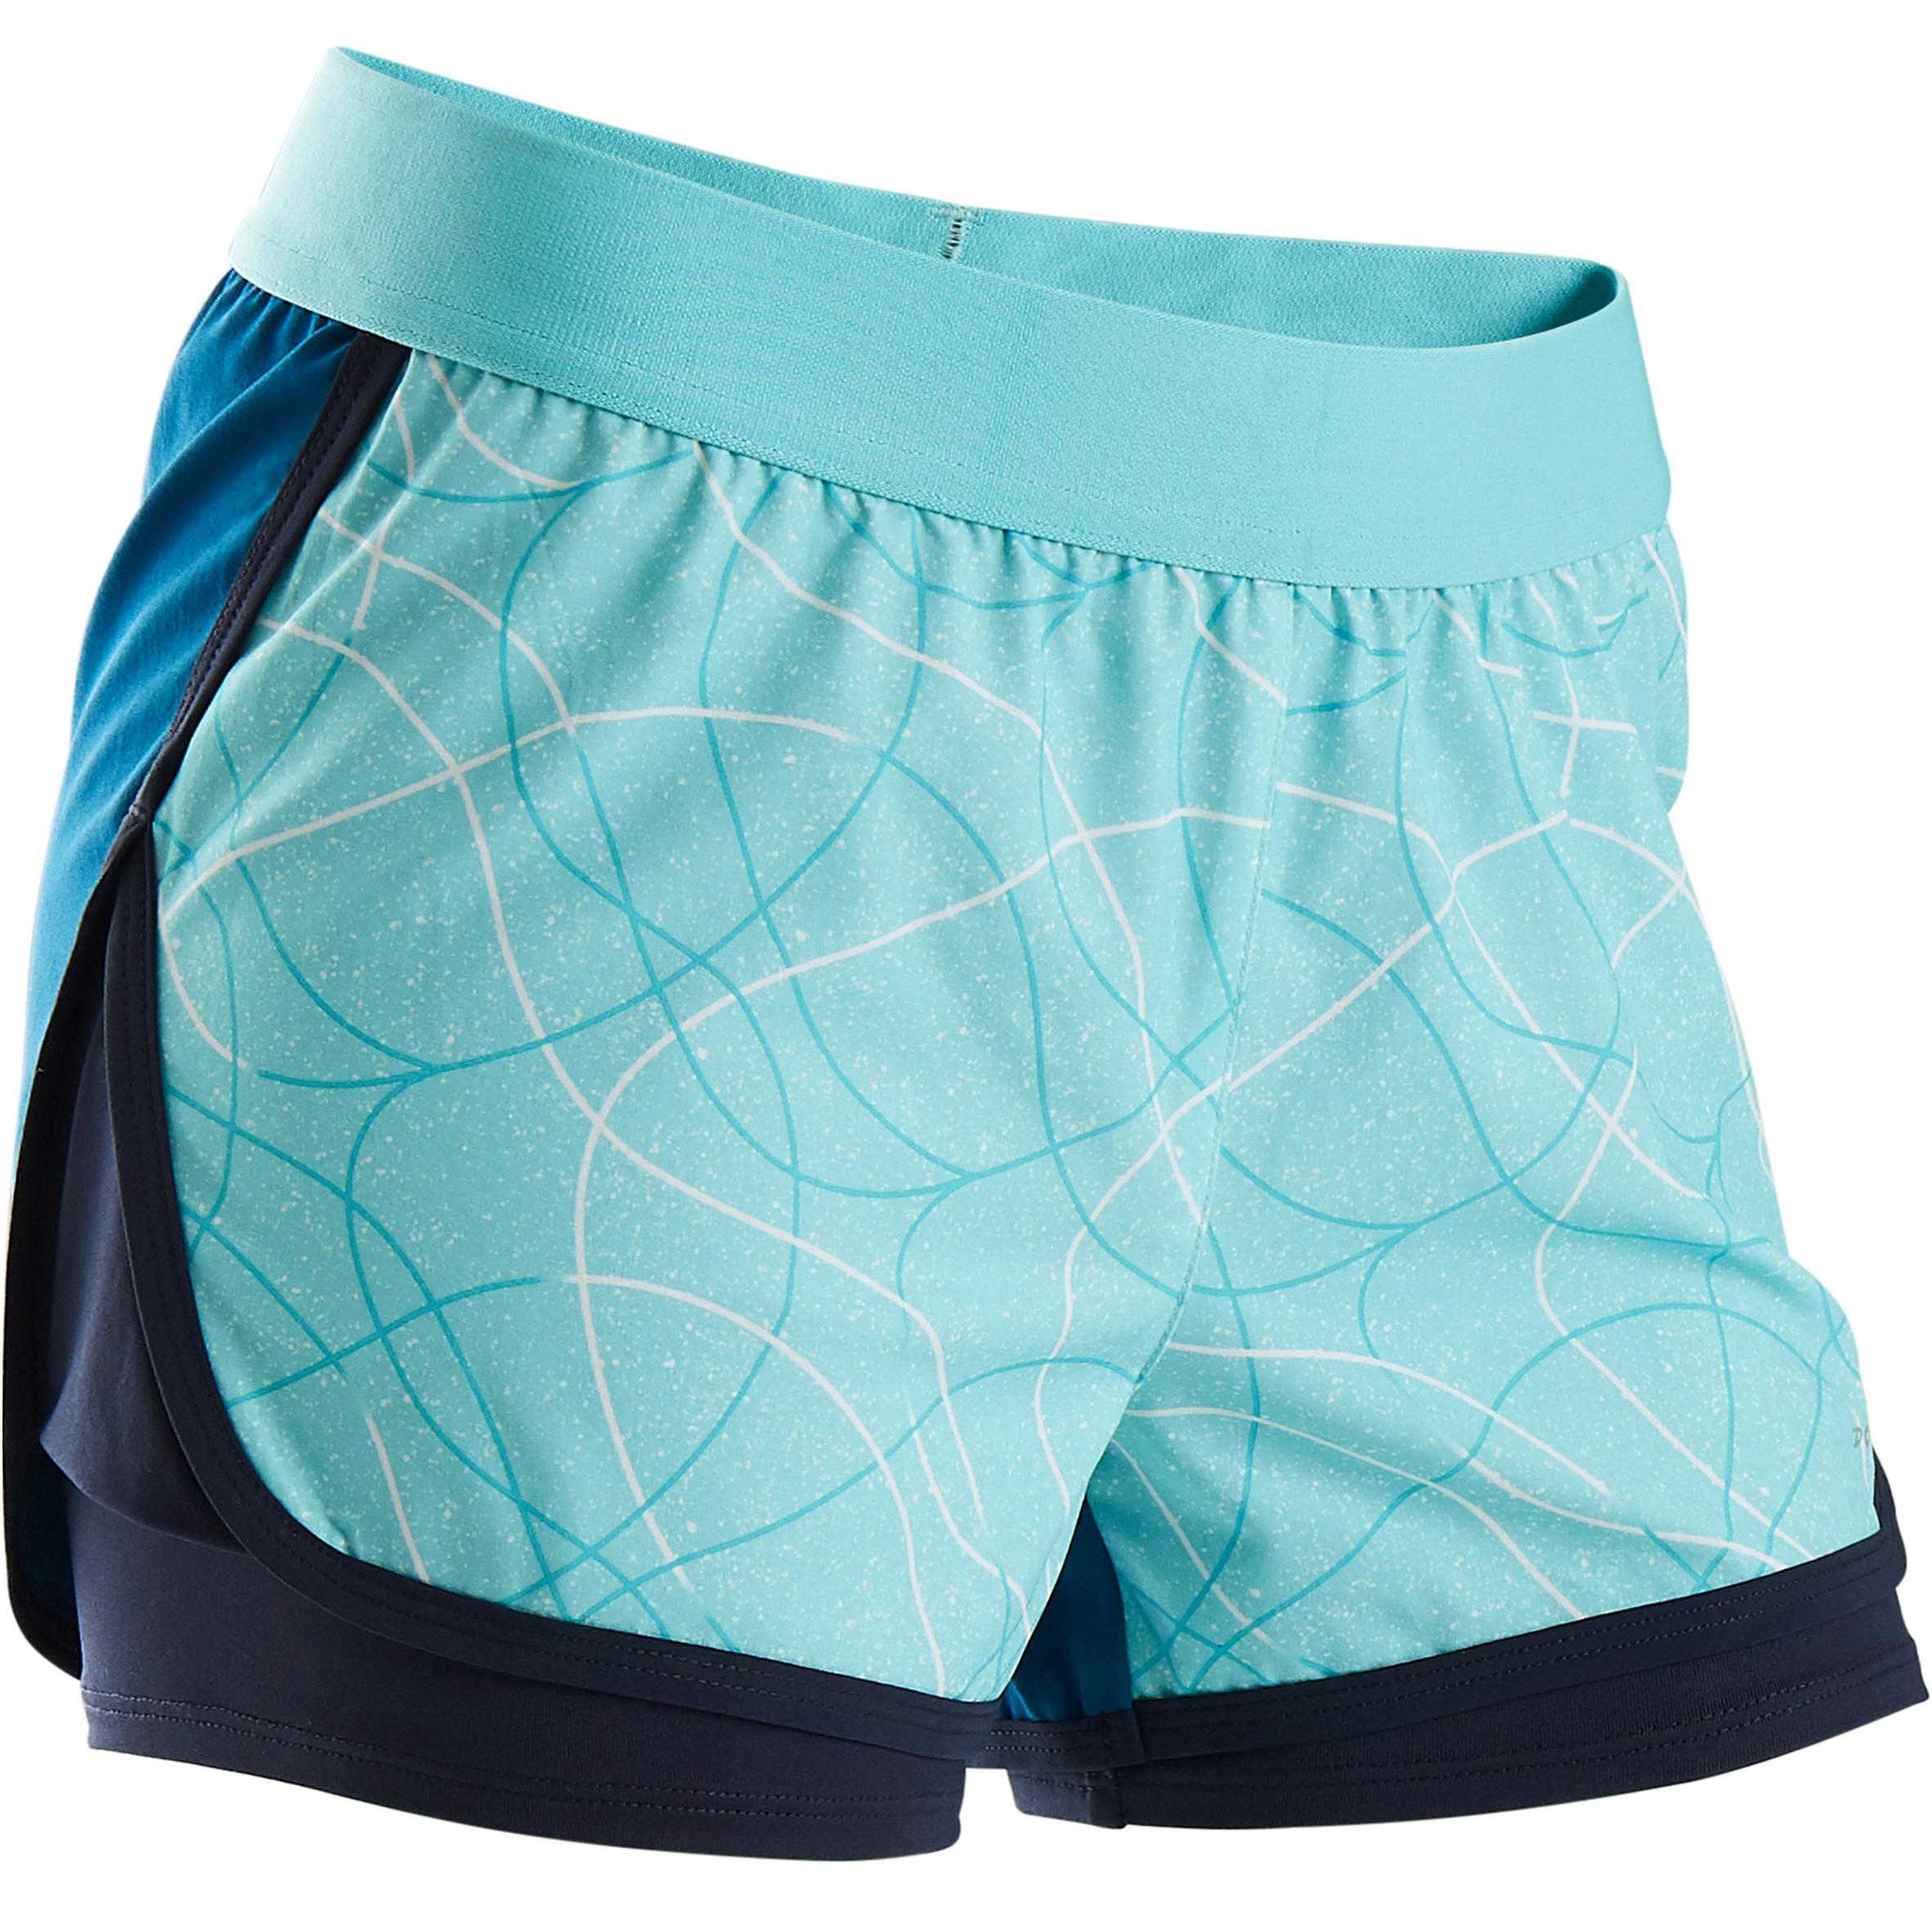 DOMYOS W900 Girls' Breathable Gym Shorts - Blue Print